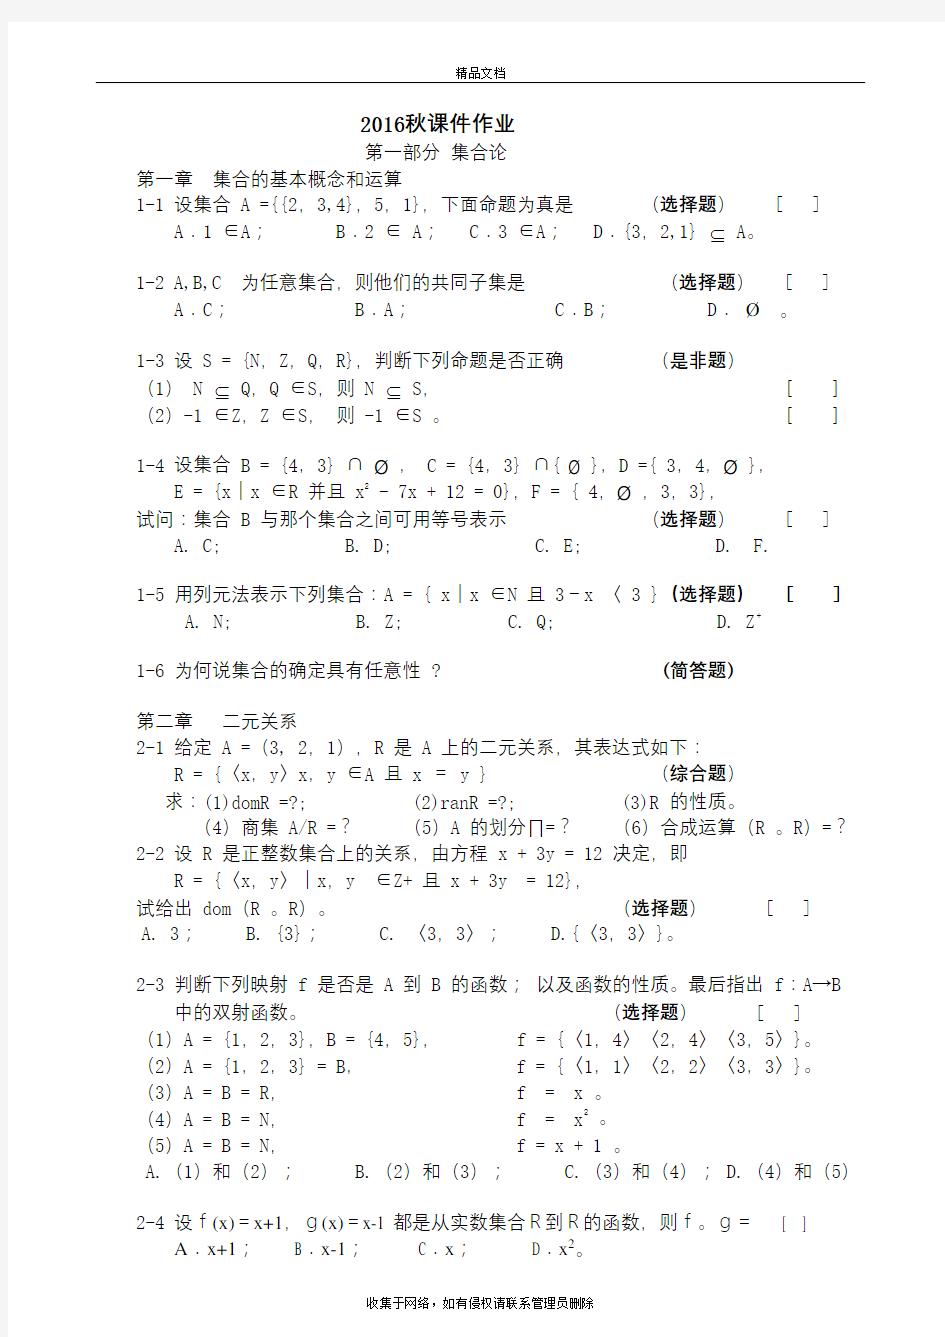 北京大学16秋季《离散数学》课程作业教学内容